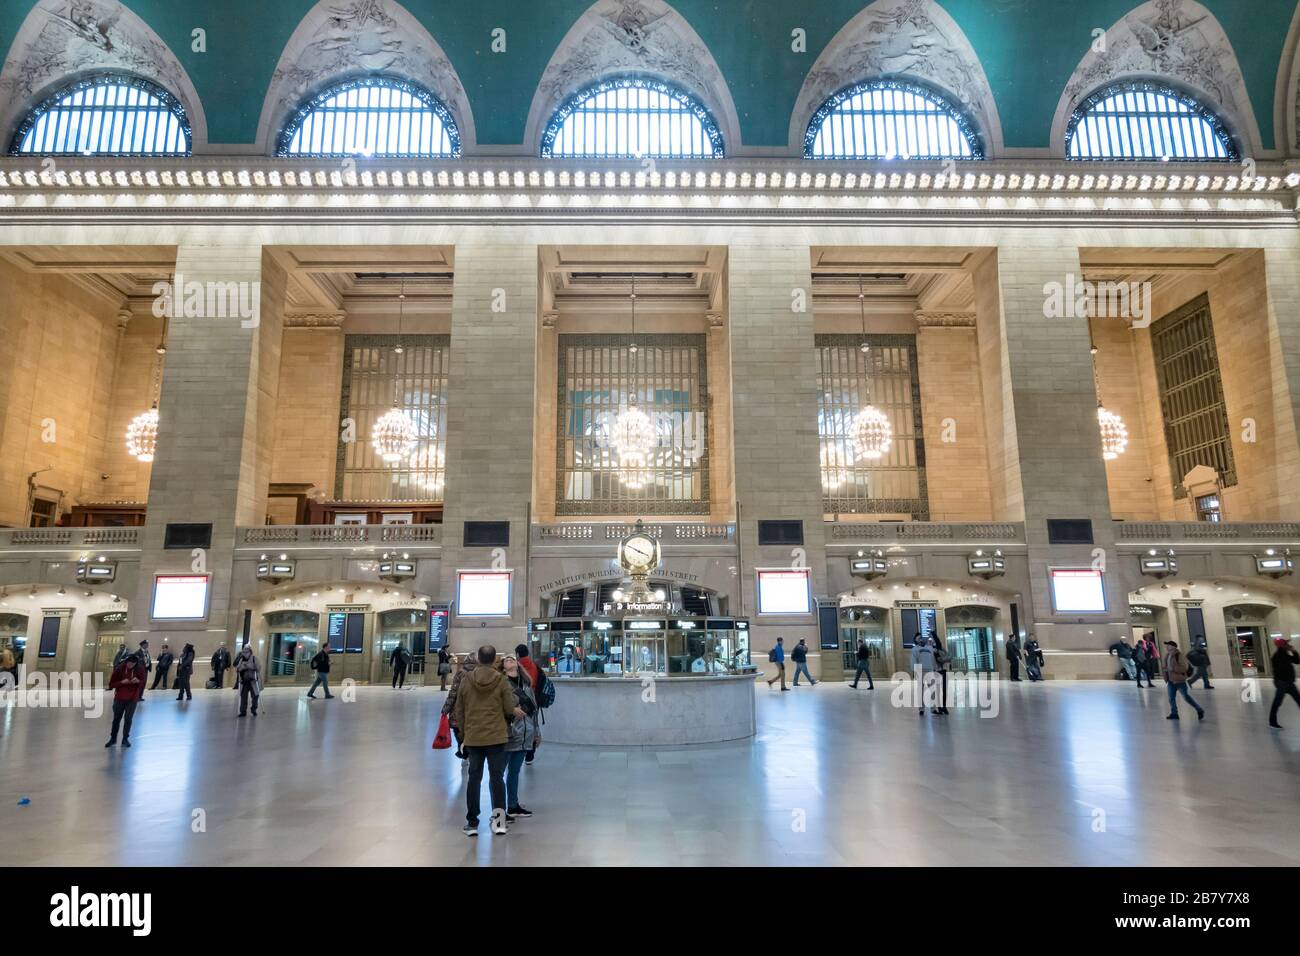 Grand Central est presque vide en raison de la pandémie COVID-19, mars 2020, New York City, États-Unis Banque D'Images